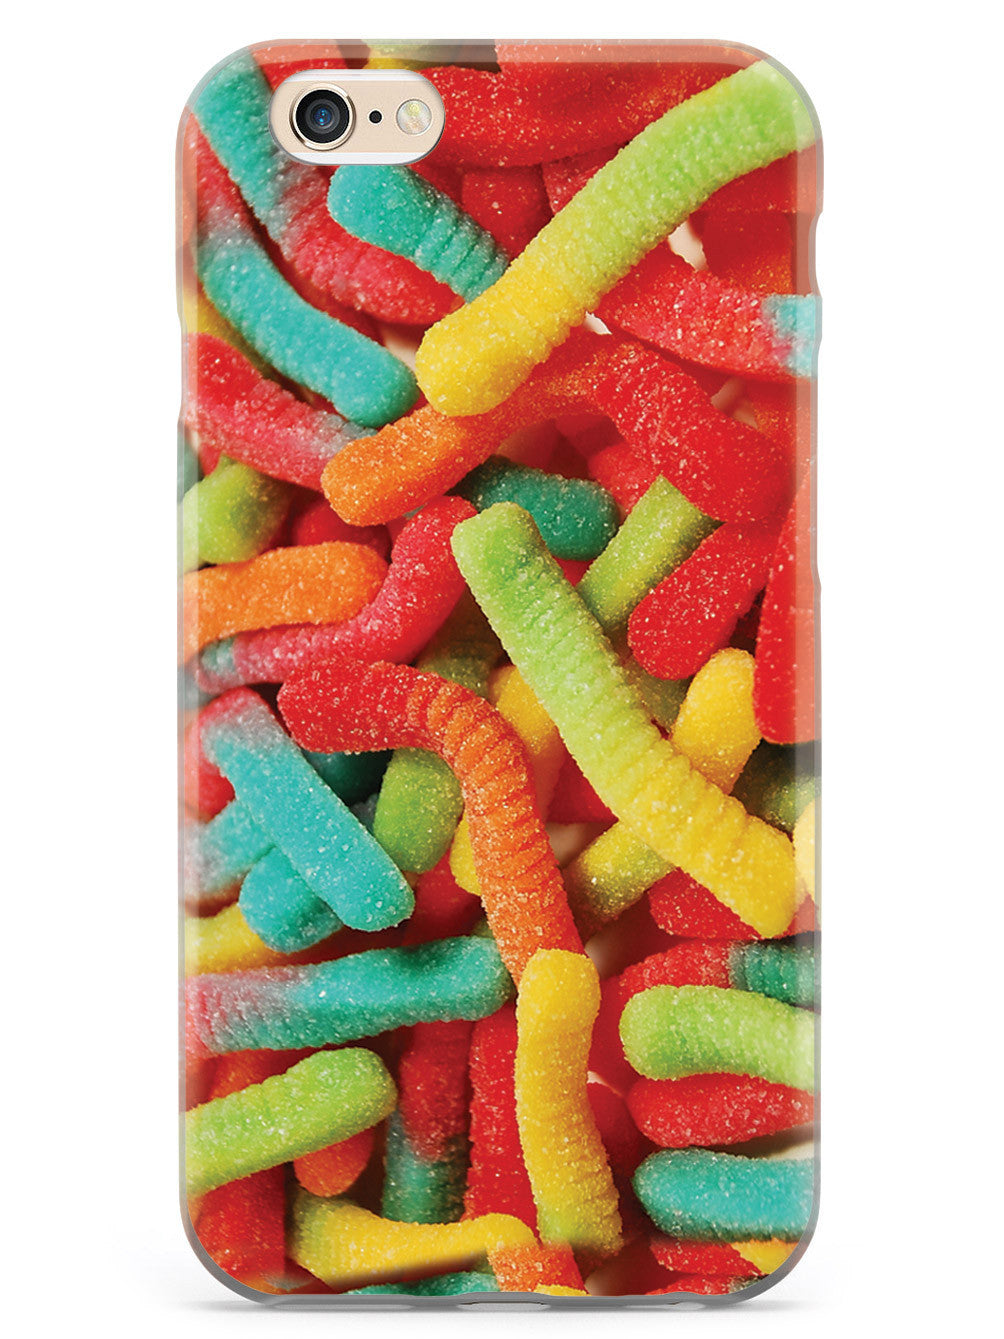 Gummy Worms Case